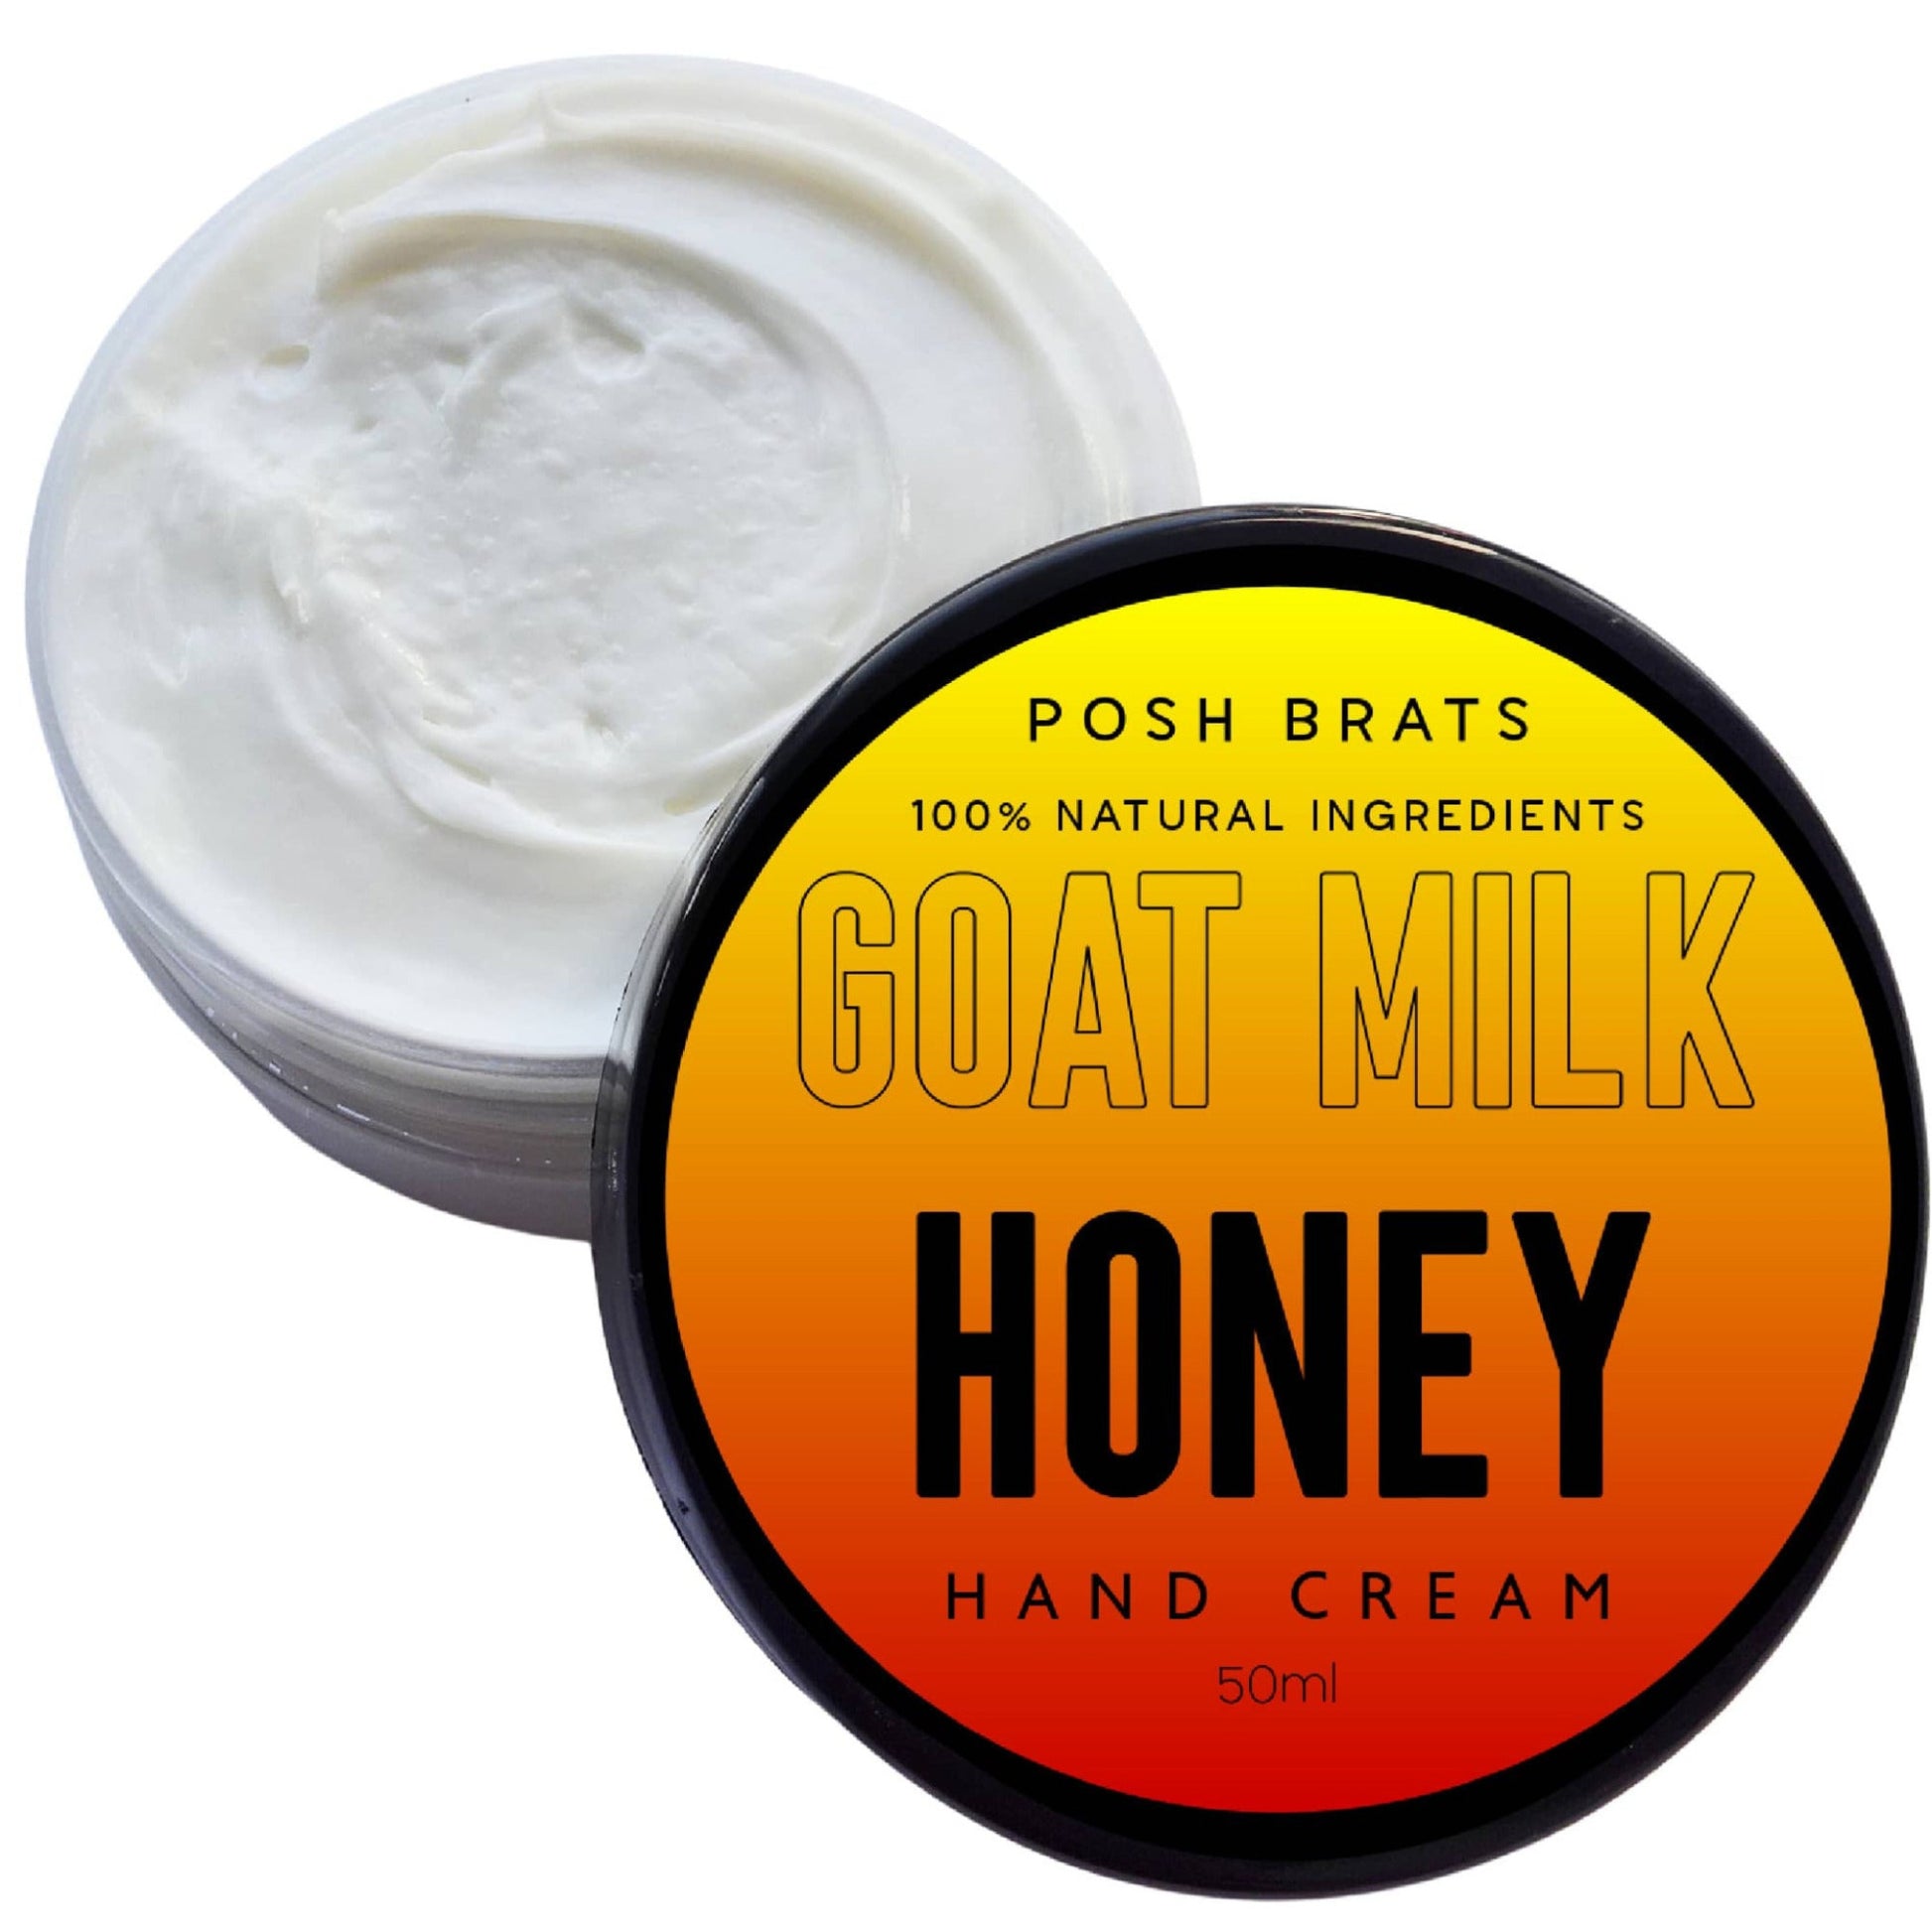 Goat Milk Aloe Vera Honey hand cream